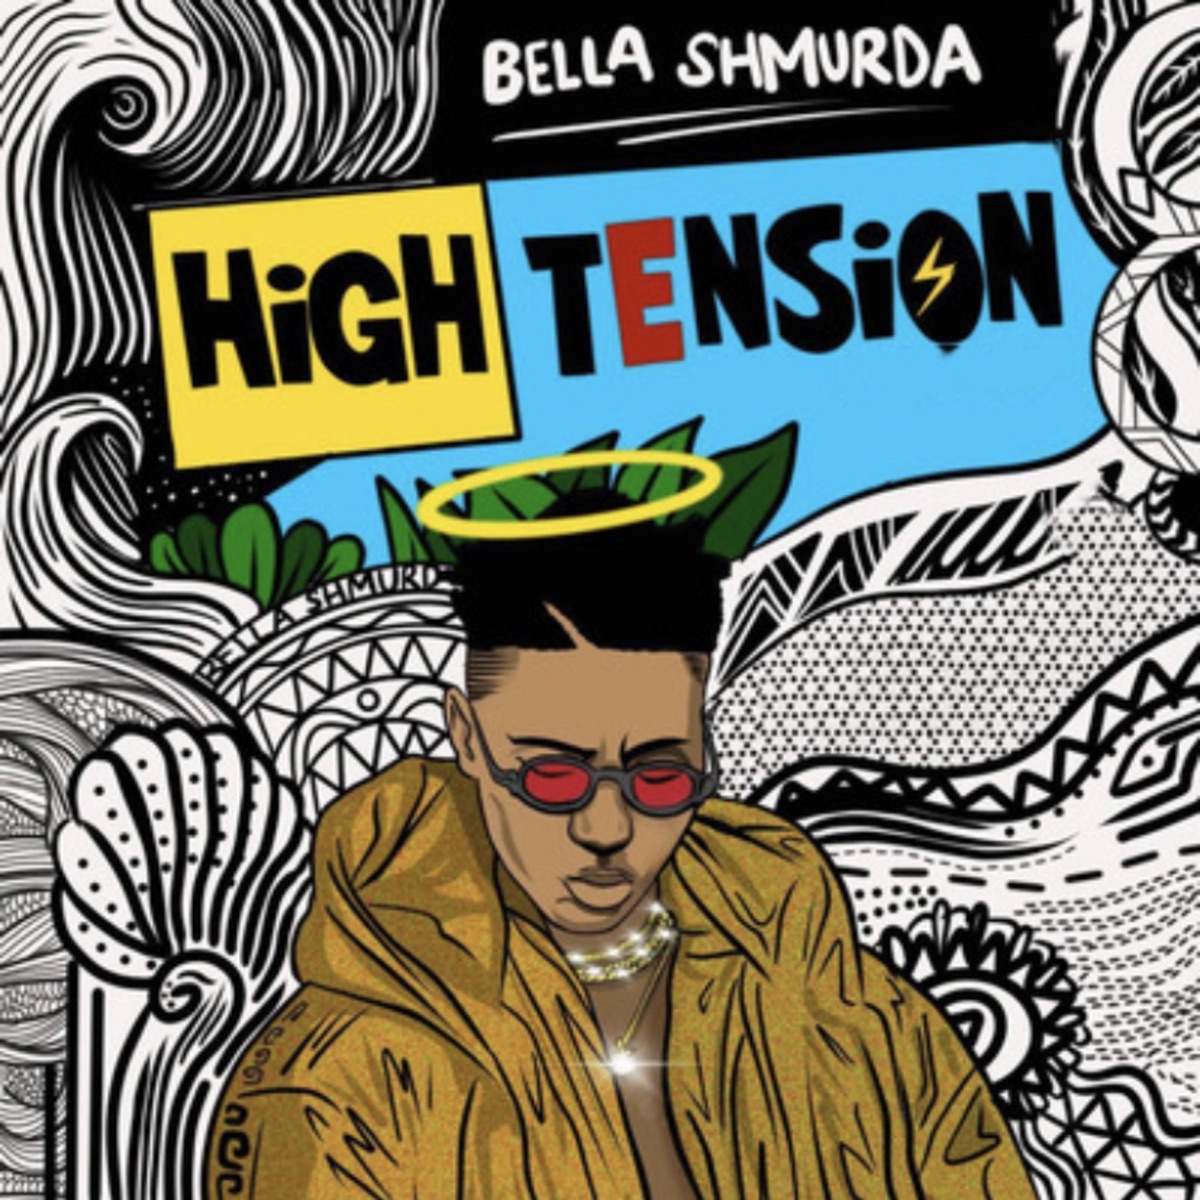 Bella Shmurda - High Tension